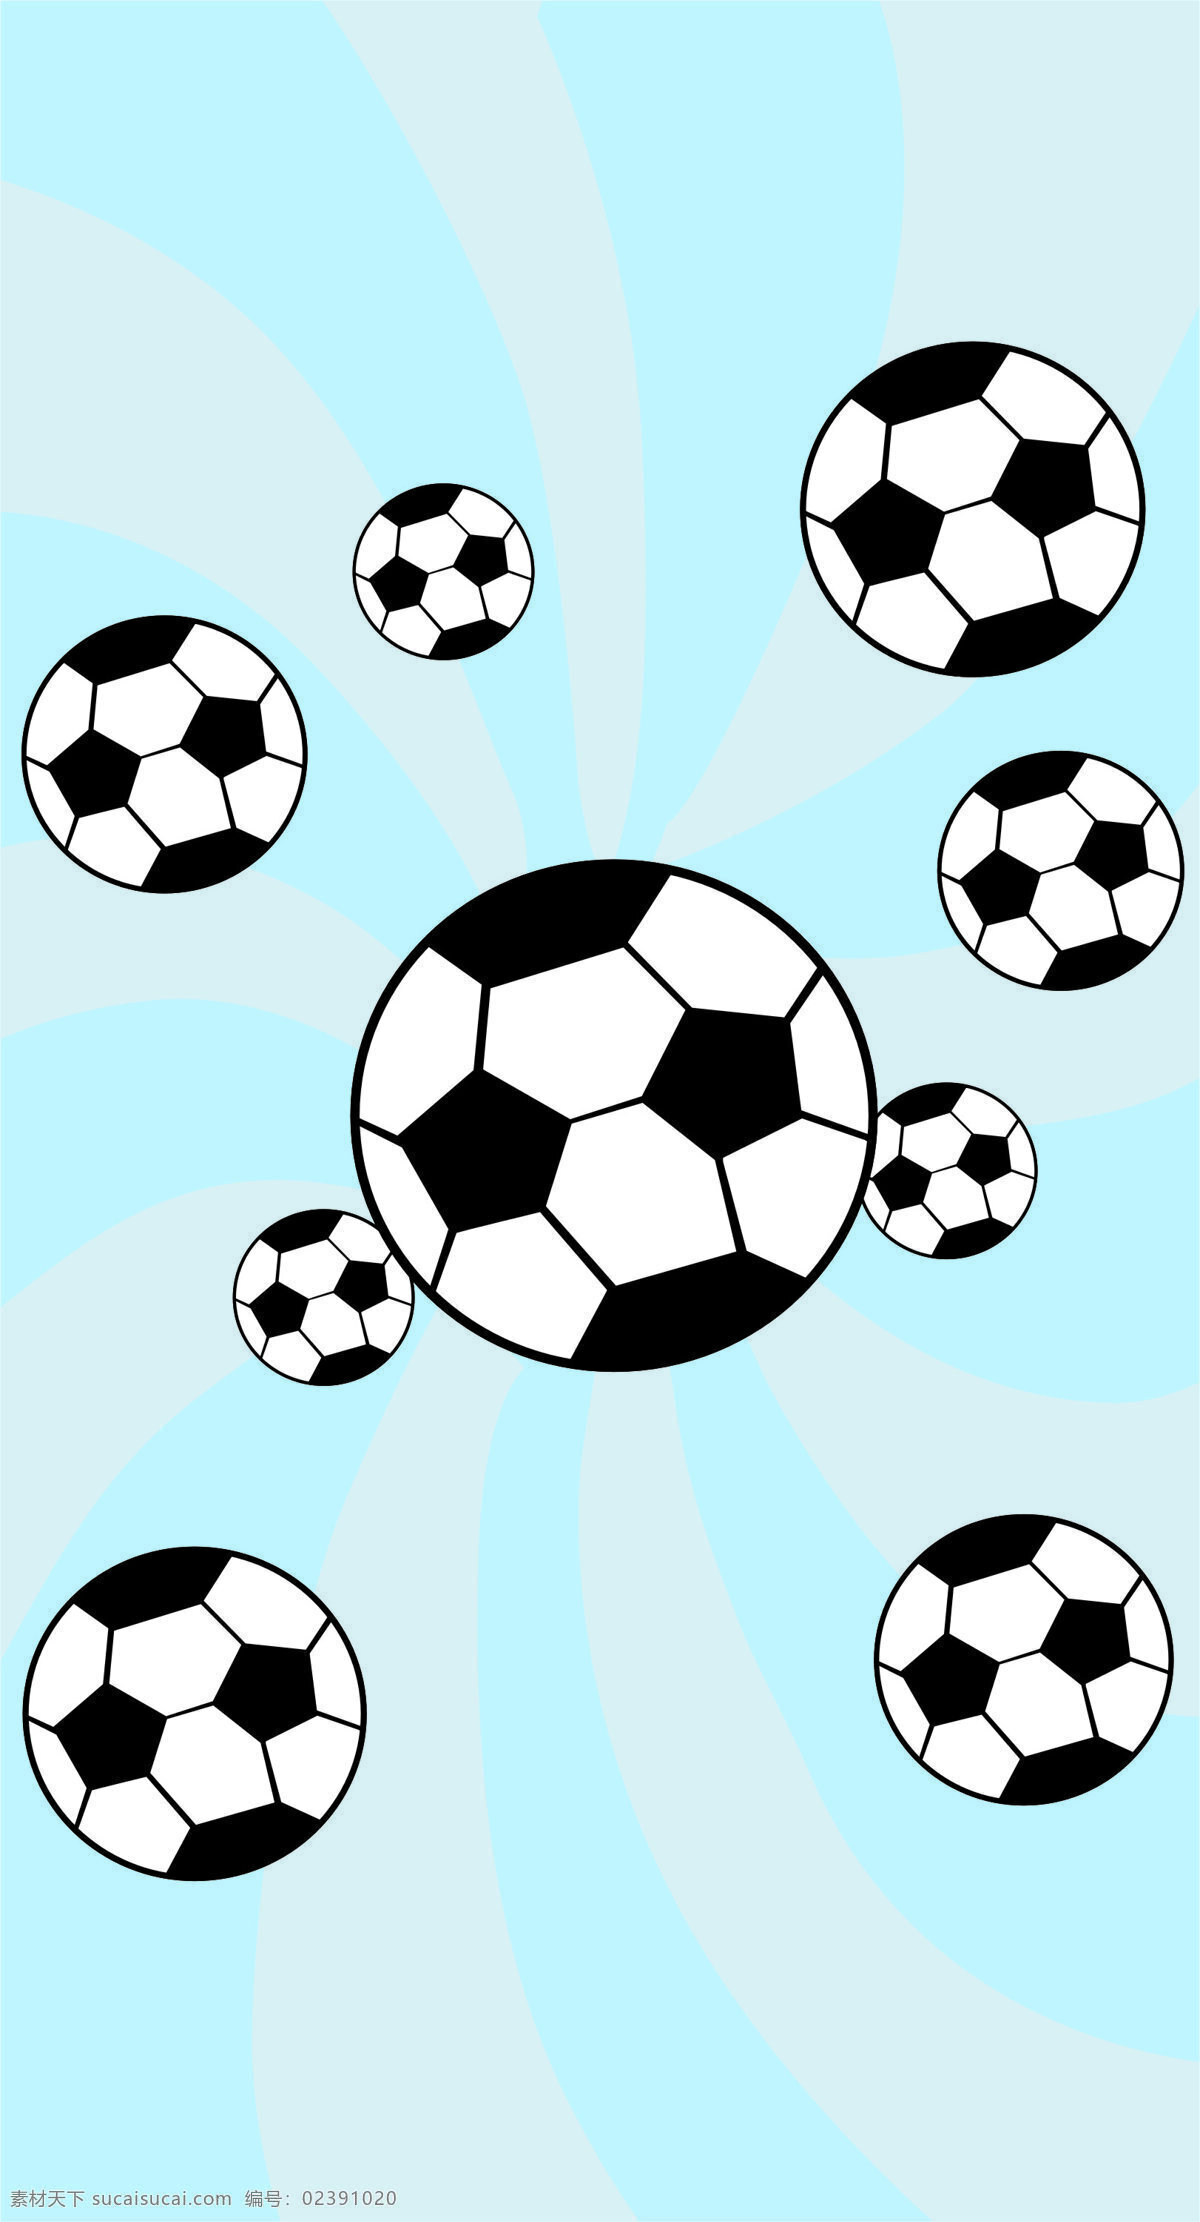 足球图片 底纹边框 花边花纹 设计图库 旋转 移门 足球 足球设计素材 足球模板下载 足球玻璃贴画 矢量图 日常生活